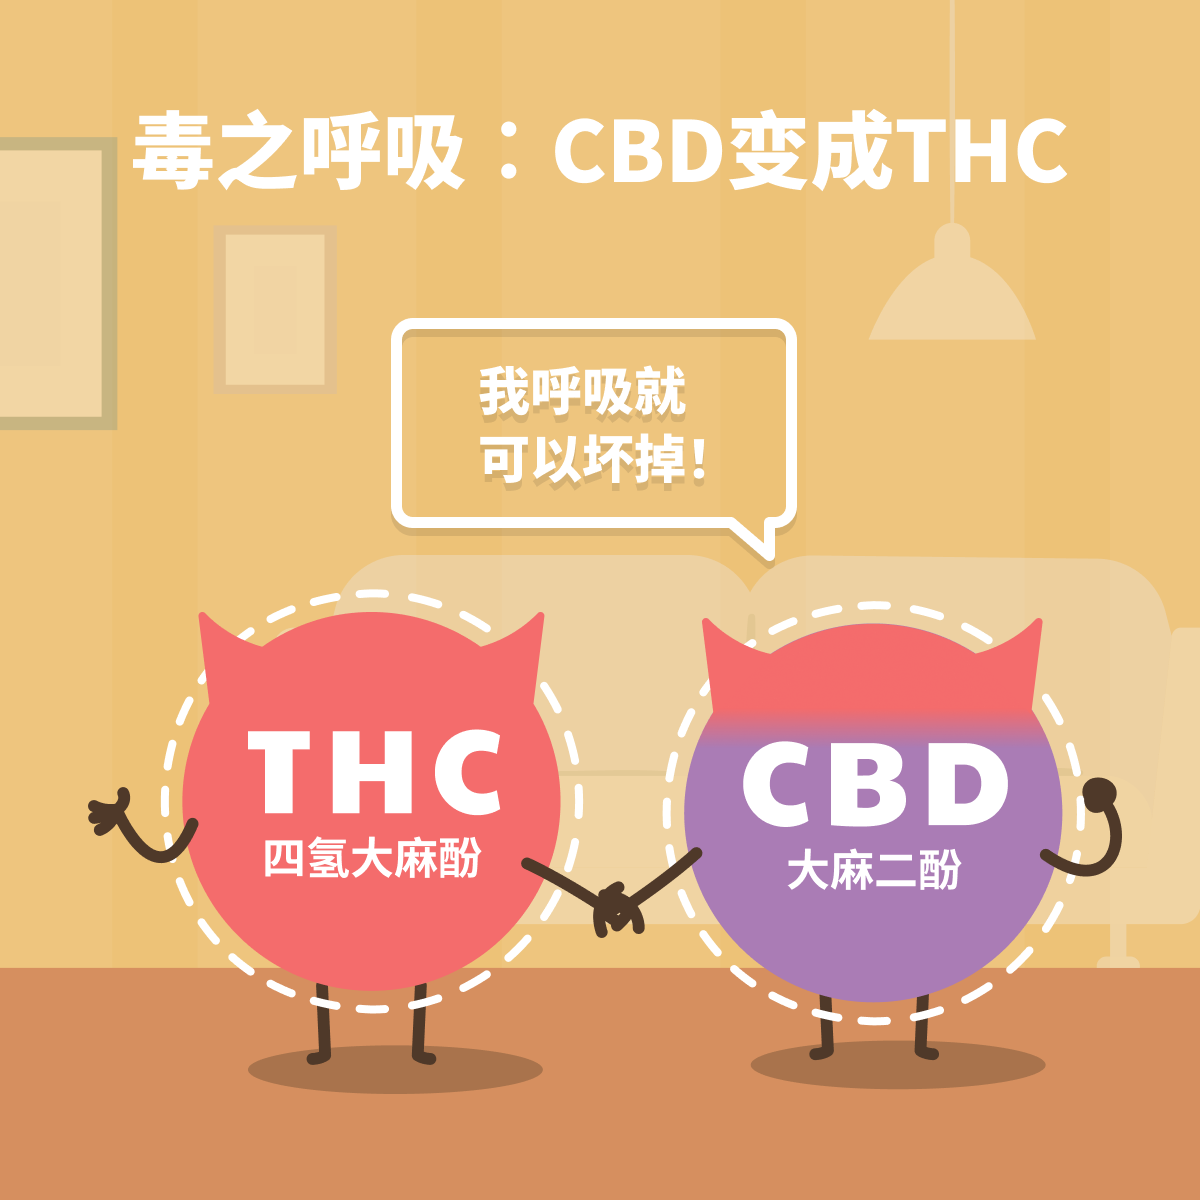 毒之呼吸︰CBD变THC